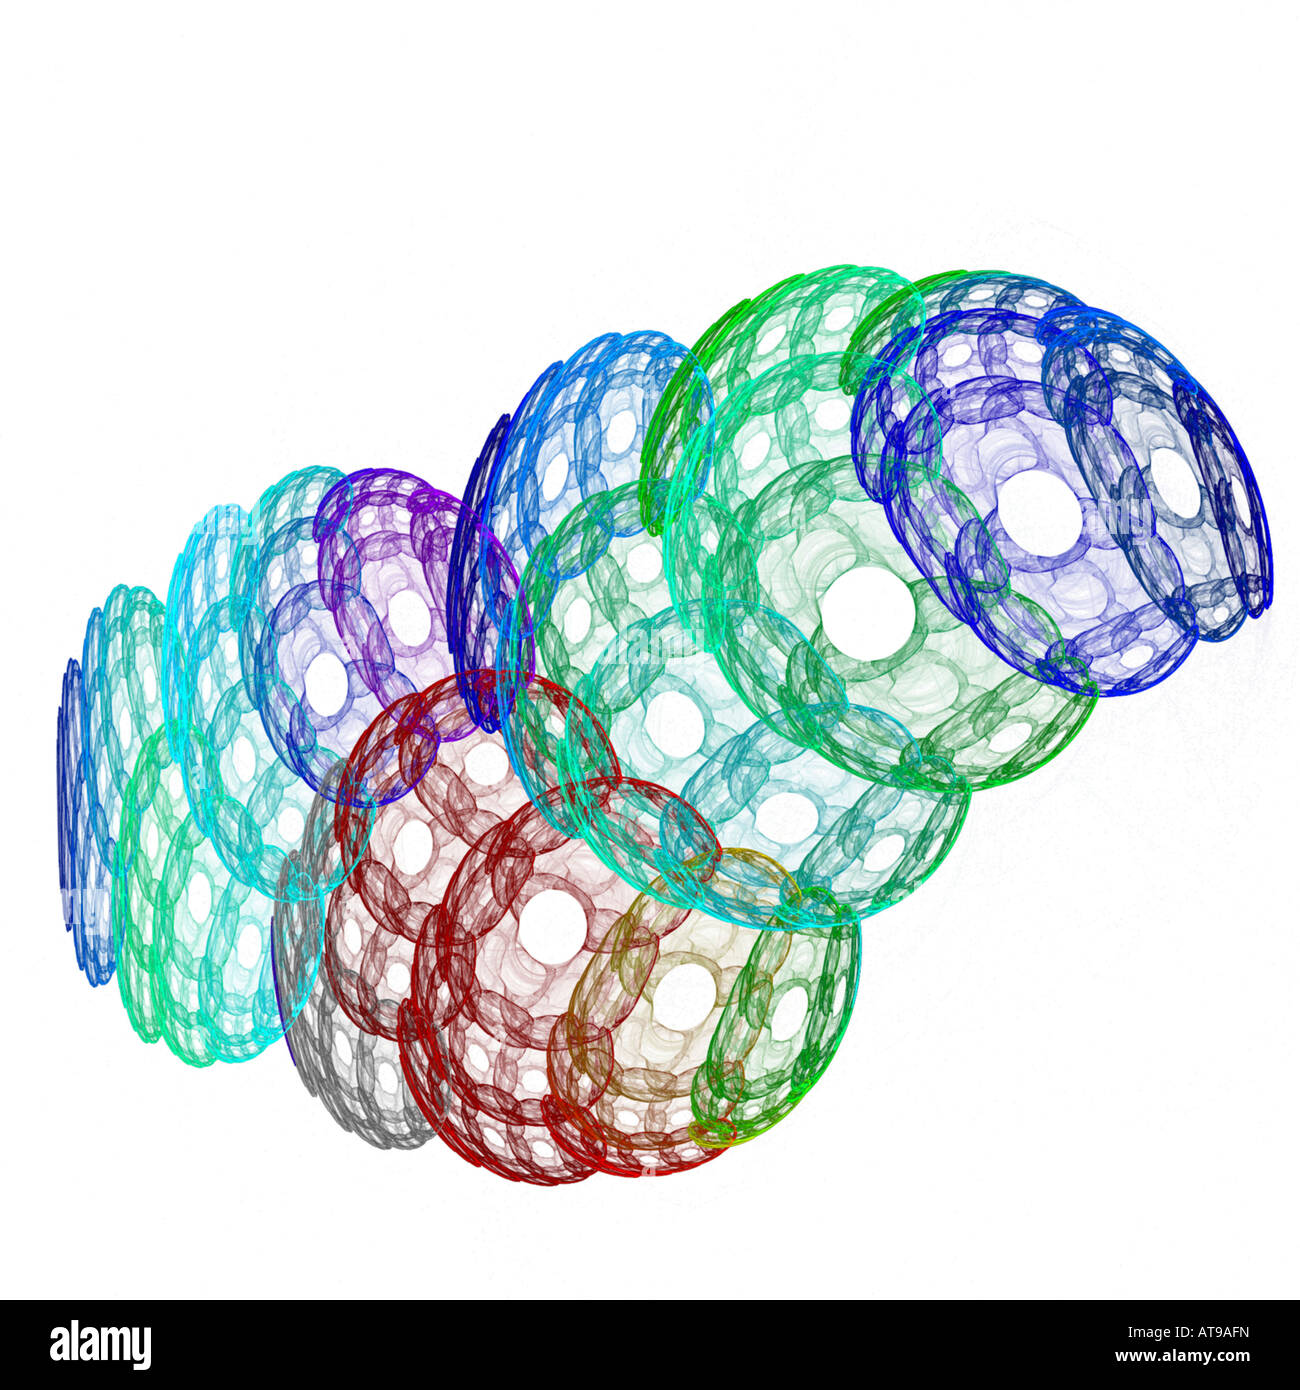 Résumé de l'image fractale ressemblant à des bulles rebondissant Banque D'Images